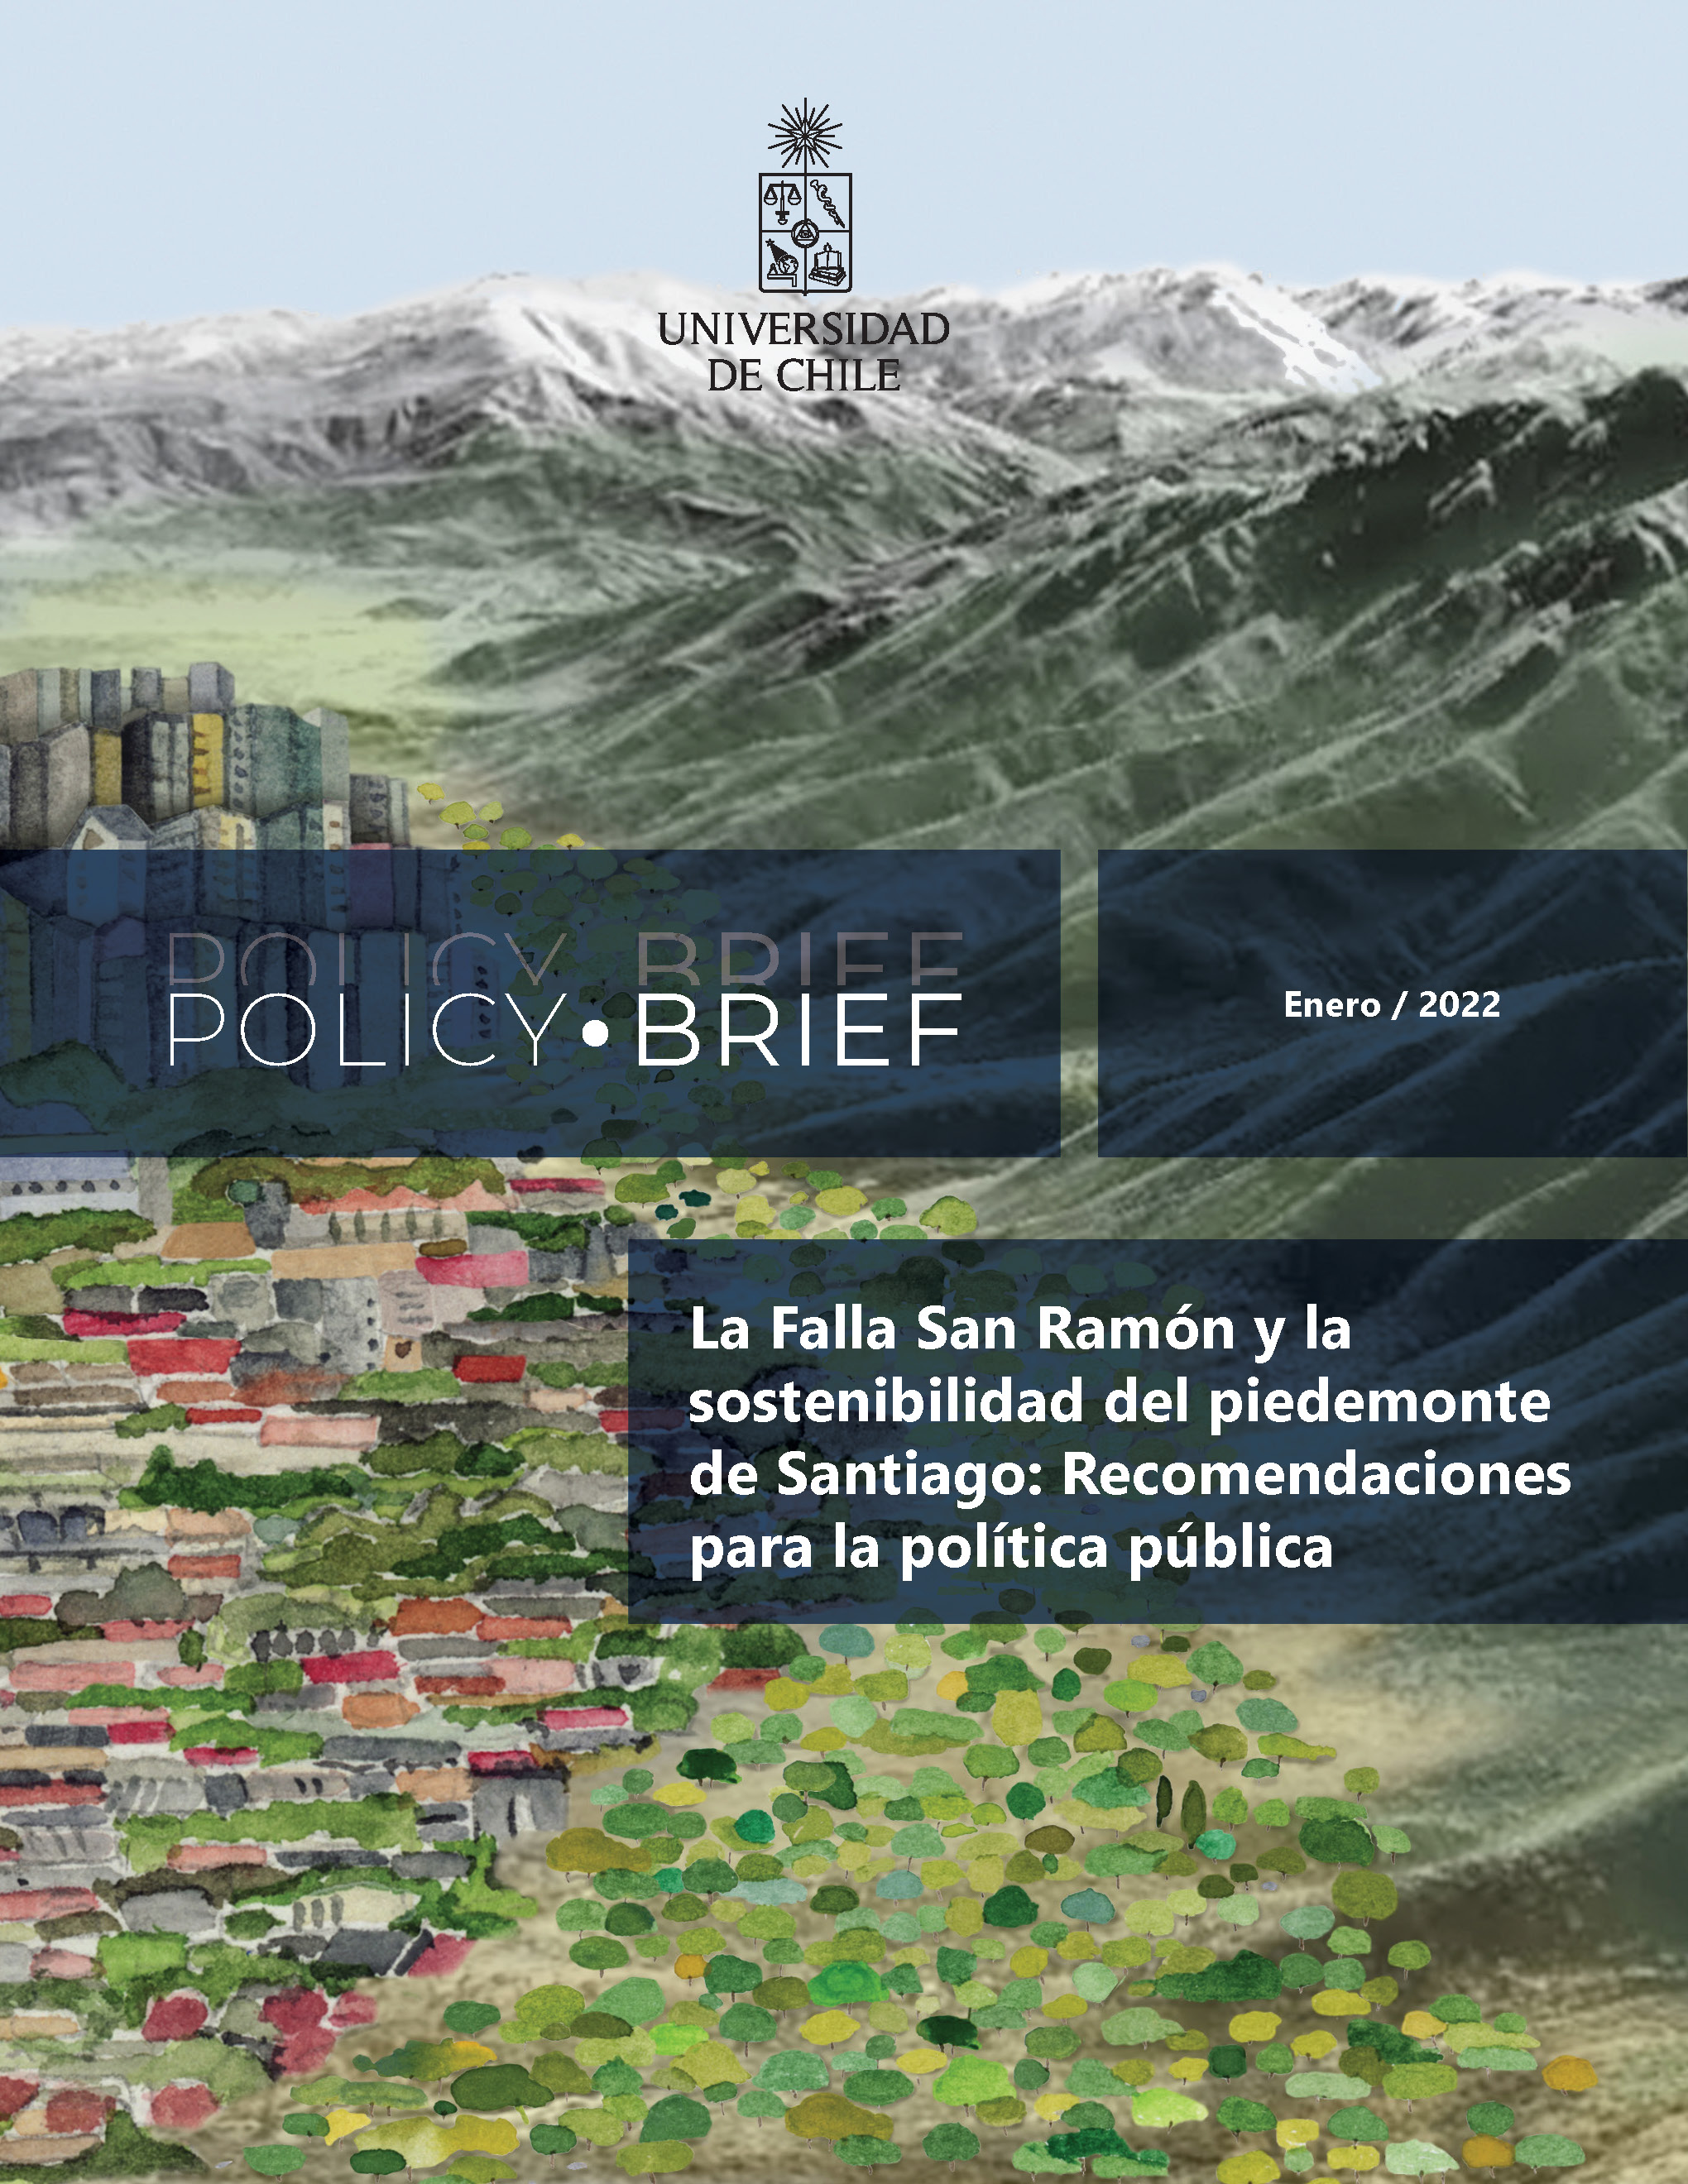 Policy Brief: La falla de San Ramón y la sostenibilidad del piedemonte de Santiago: recomendaciones para la política pública